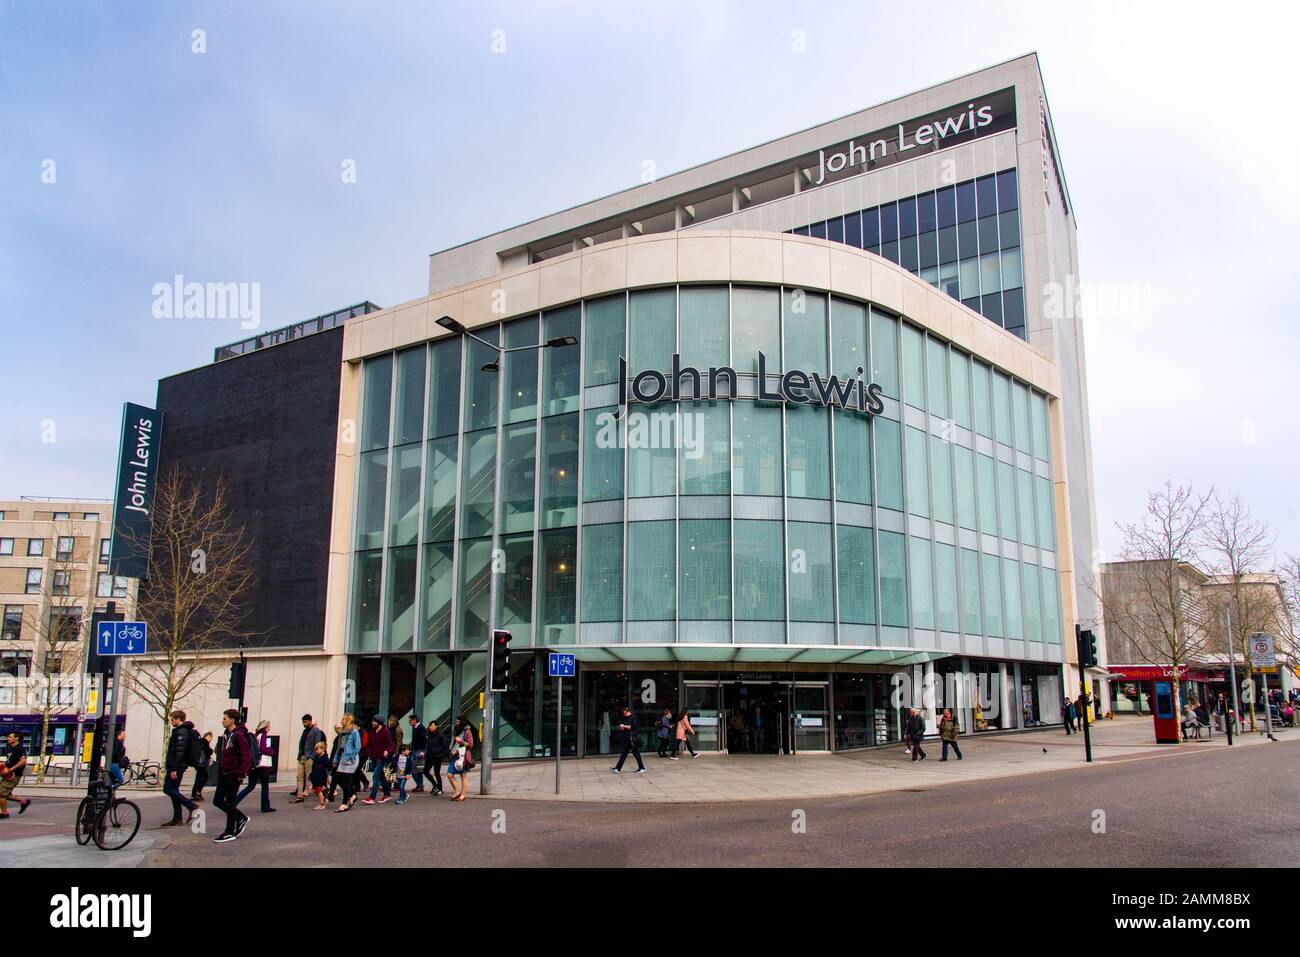 Exeter, DEVON, Royaume-Uni - 31 mars 19 : le magasin John Lewis est l'un des bâtiments emblématiques du centre d'Exeter. Le grand magasin Bobby and Co a géré f Banque D'Images